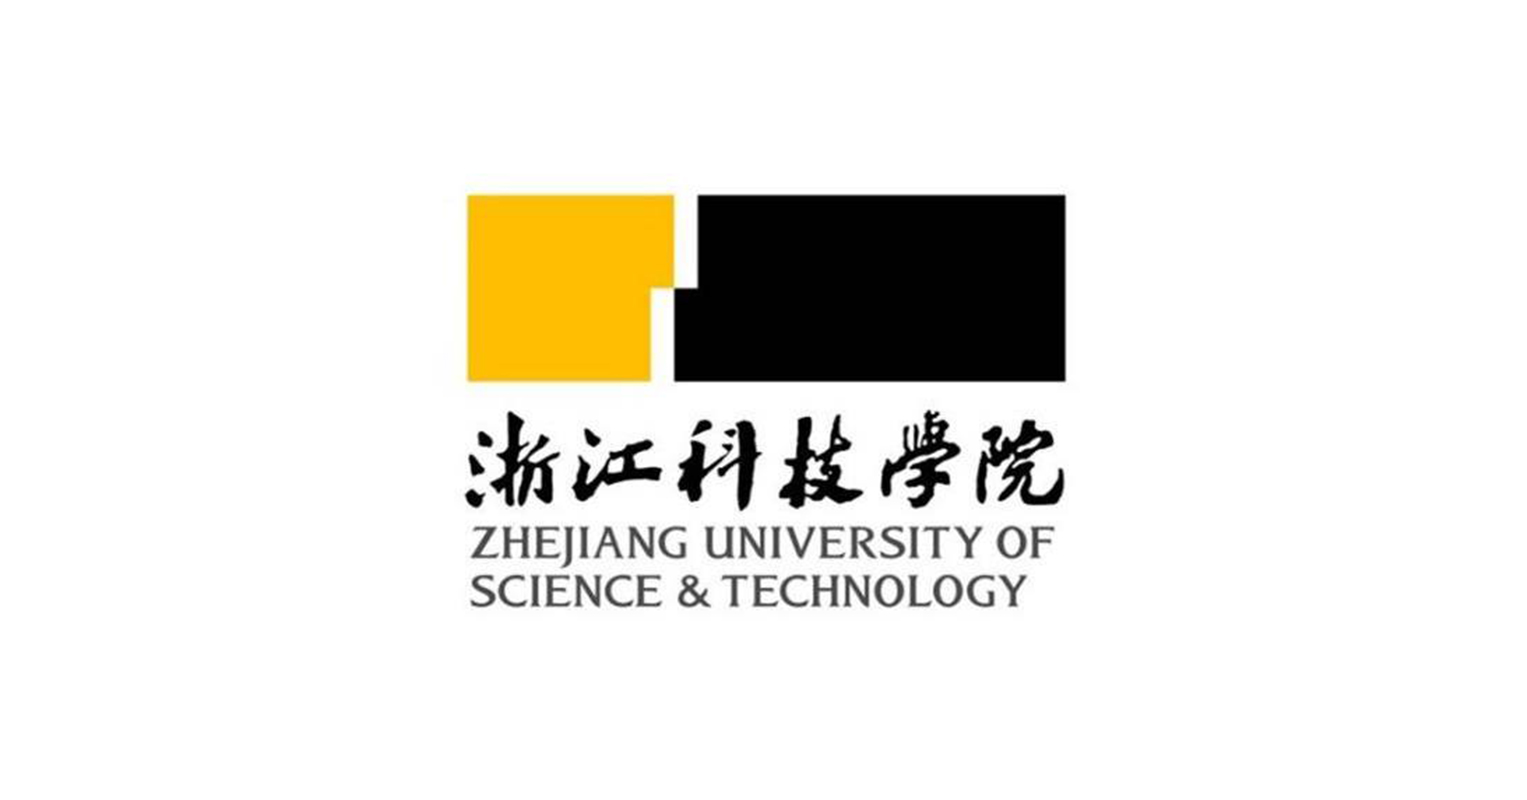 Universidad de Ciencia y Tecnología de Zhejiang